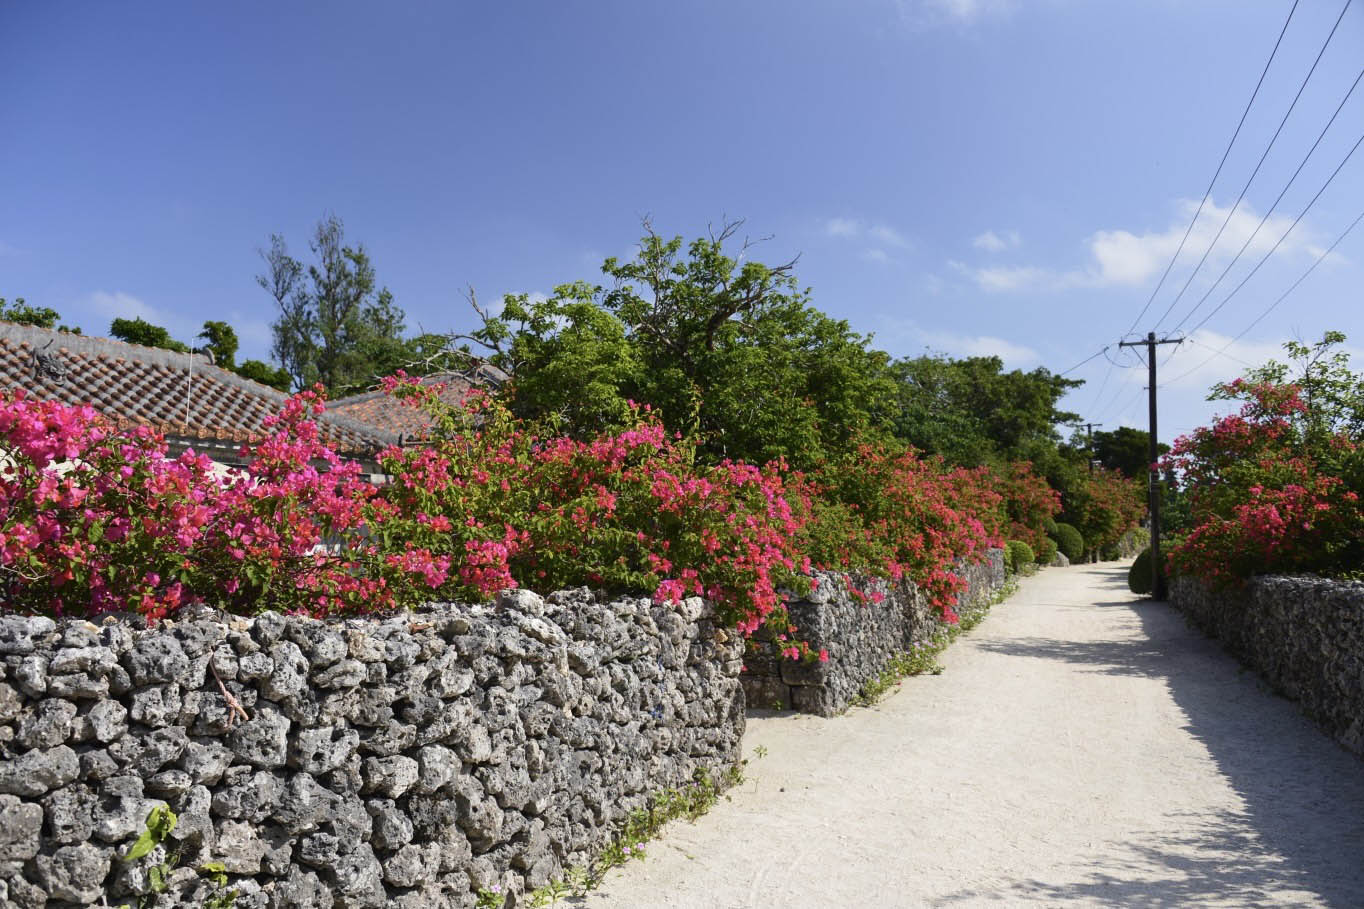 taketomi village limestone walls